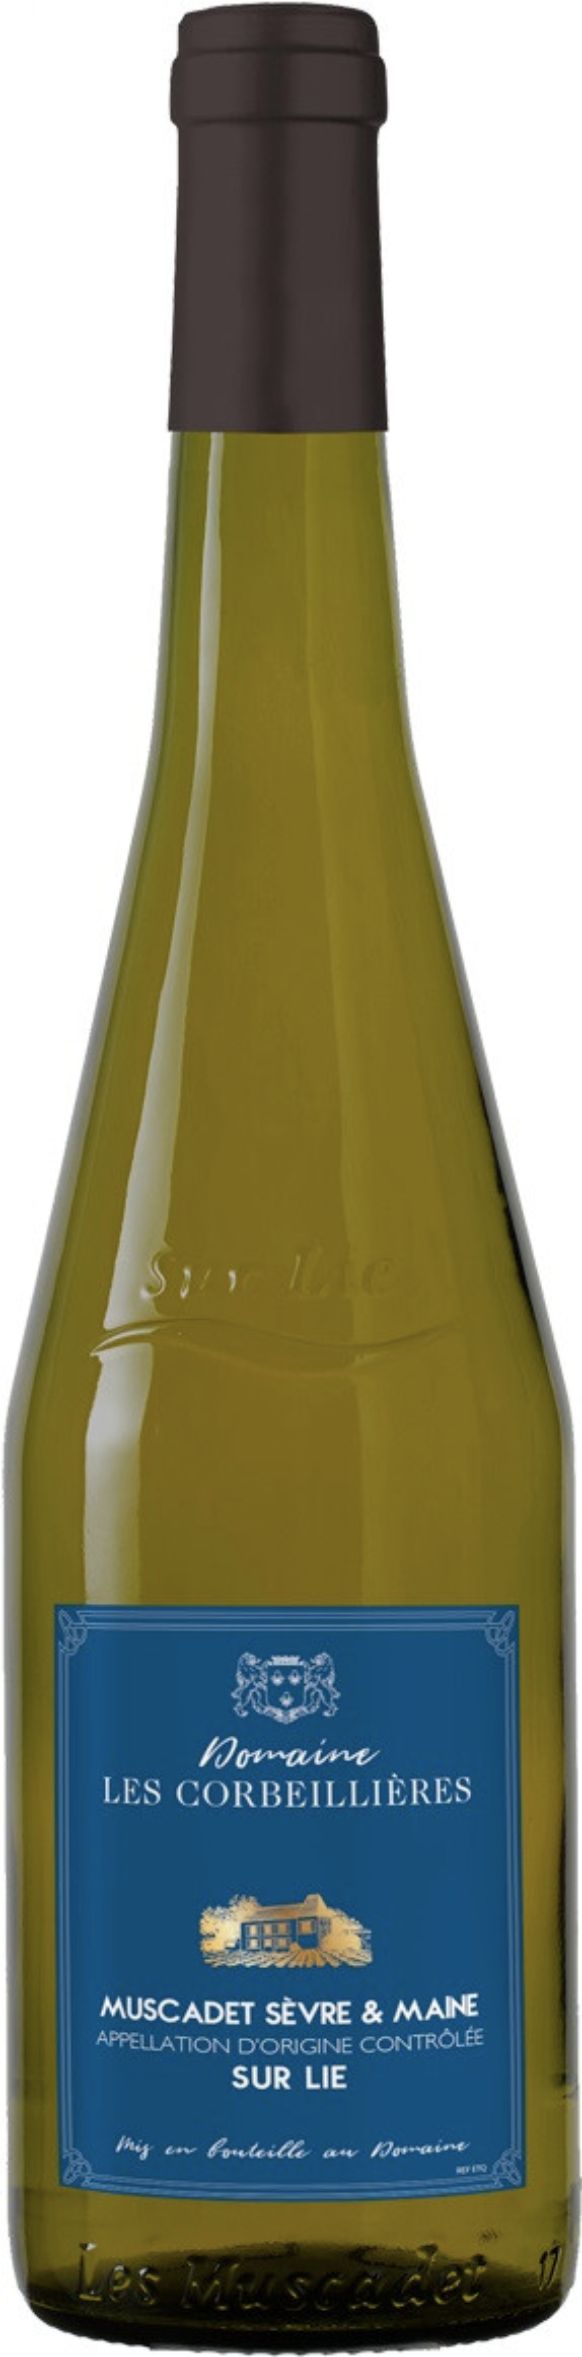 Вино защищенного наименования места происхождения, региона Мюскаде Севр Э Мэн, сухое белое, ка. АОС, сах. 0-3 г/л, сод.